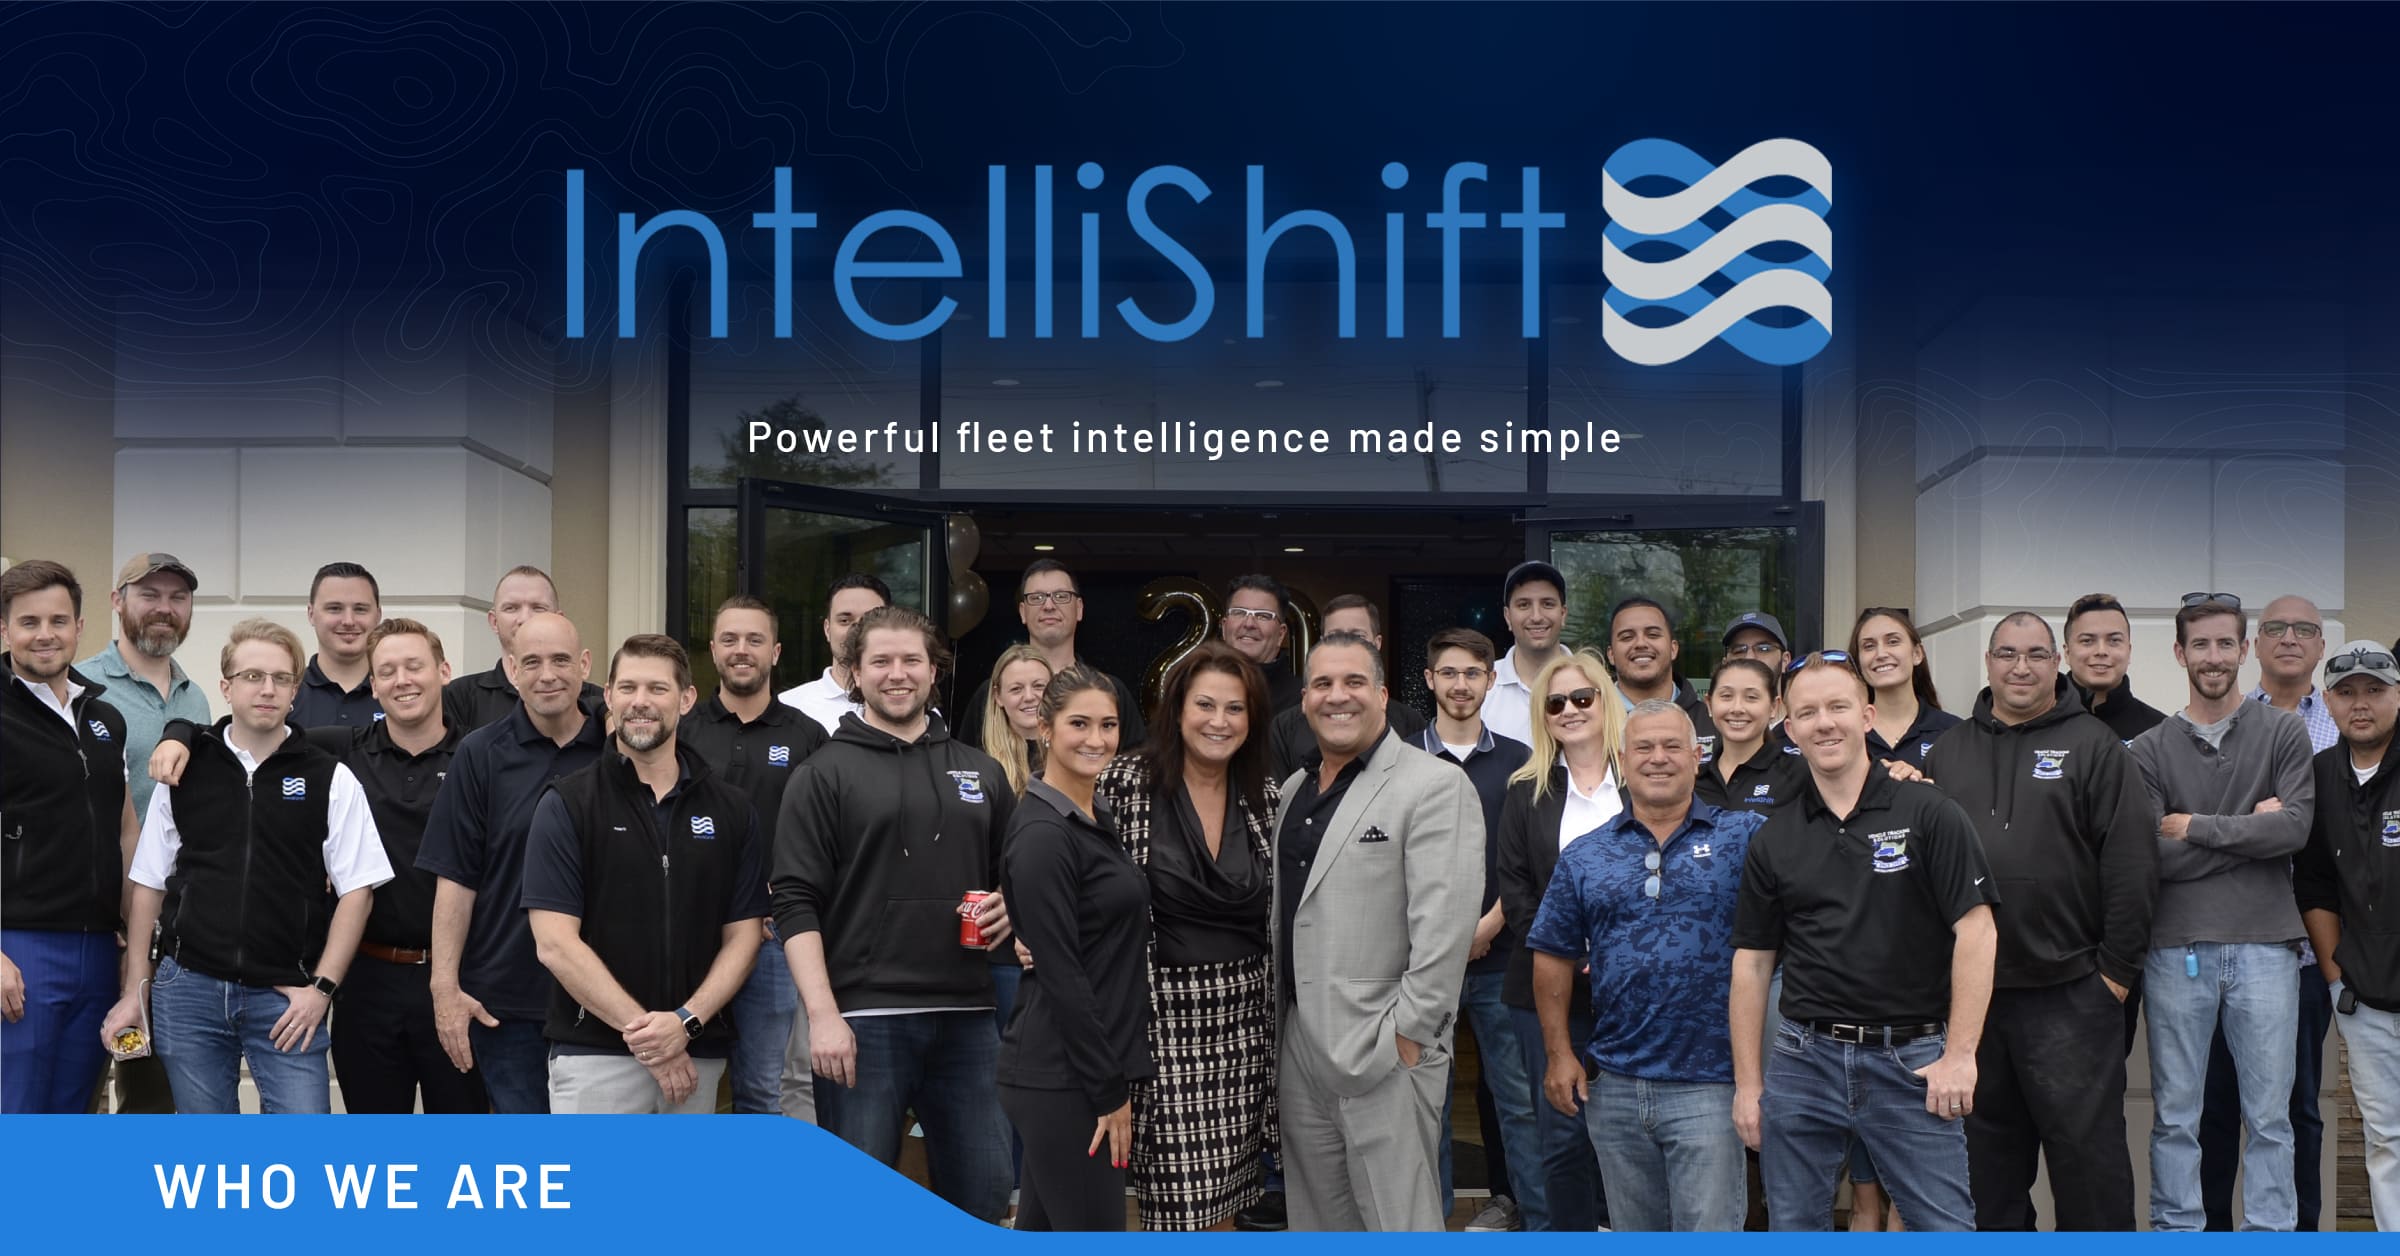 About IntelliShift